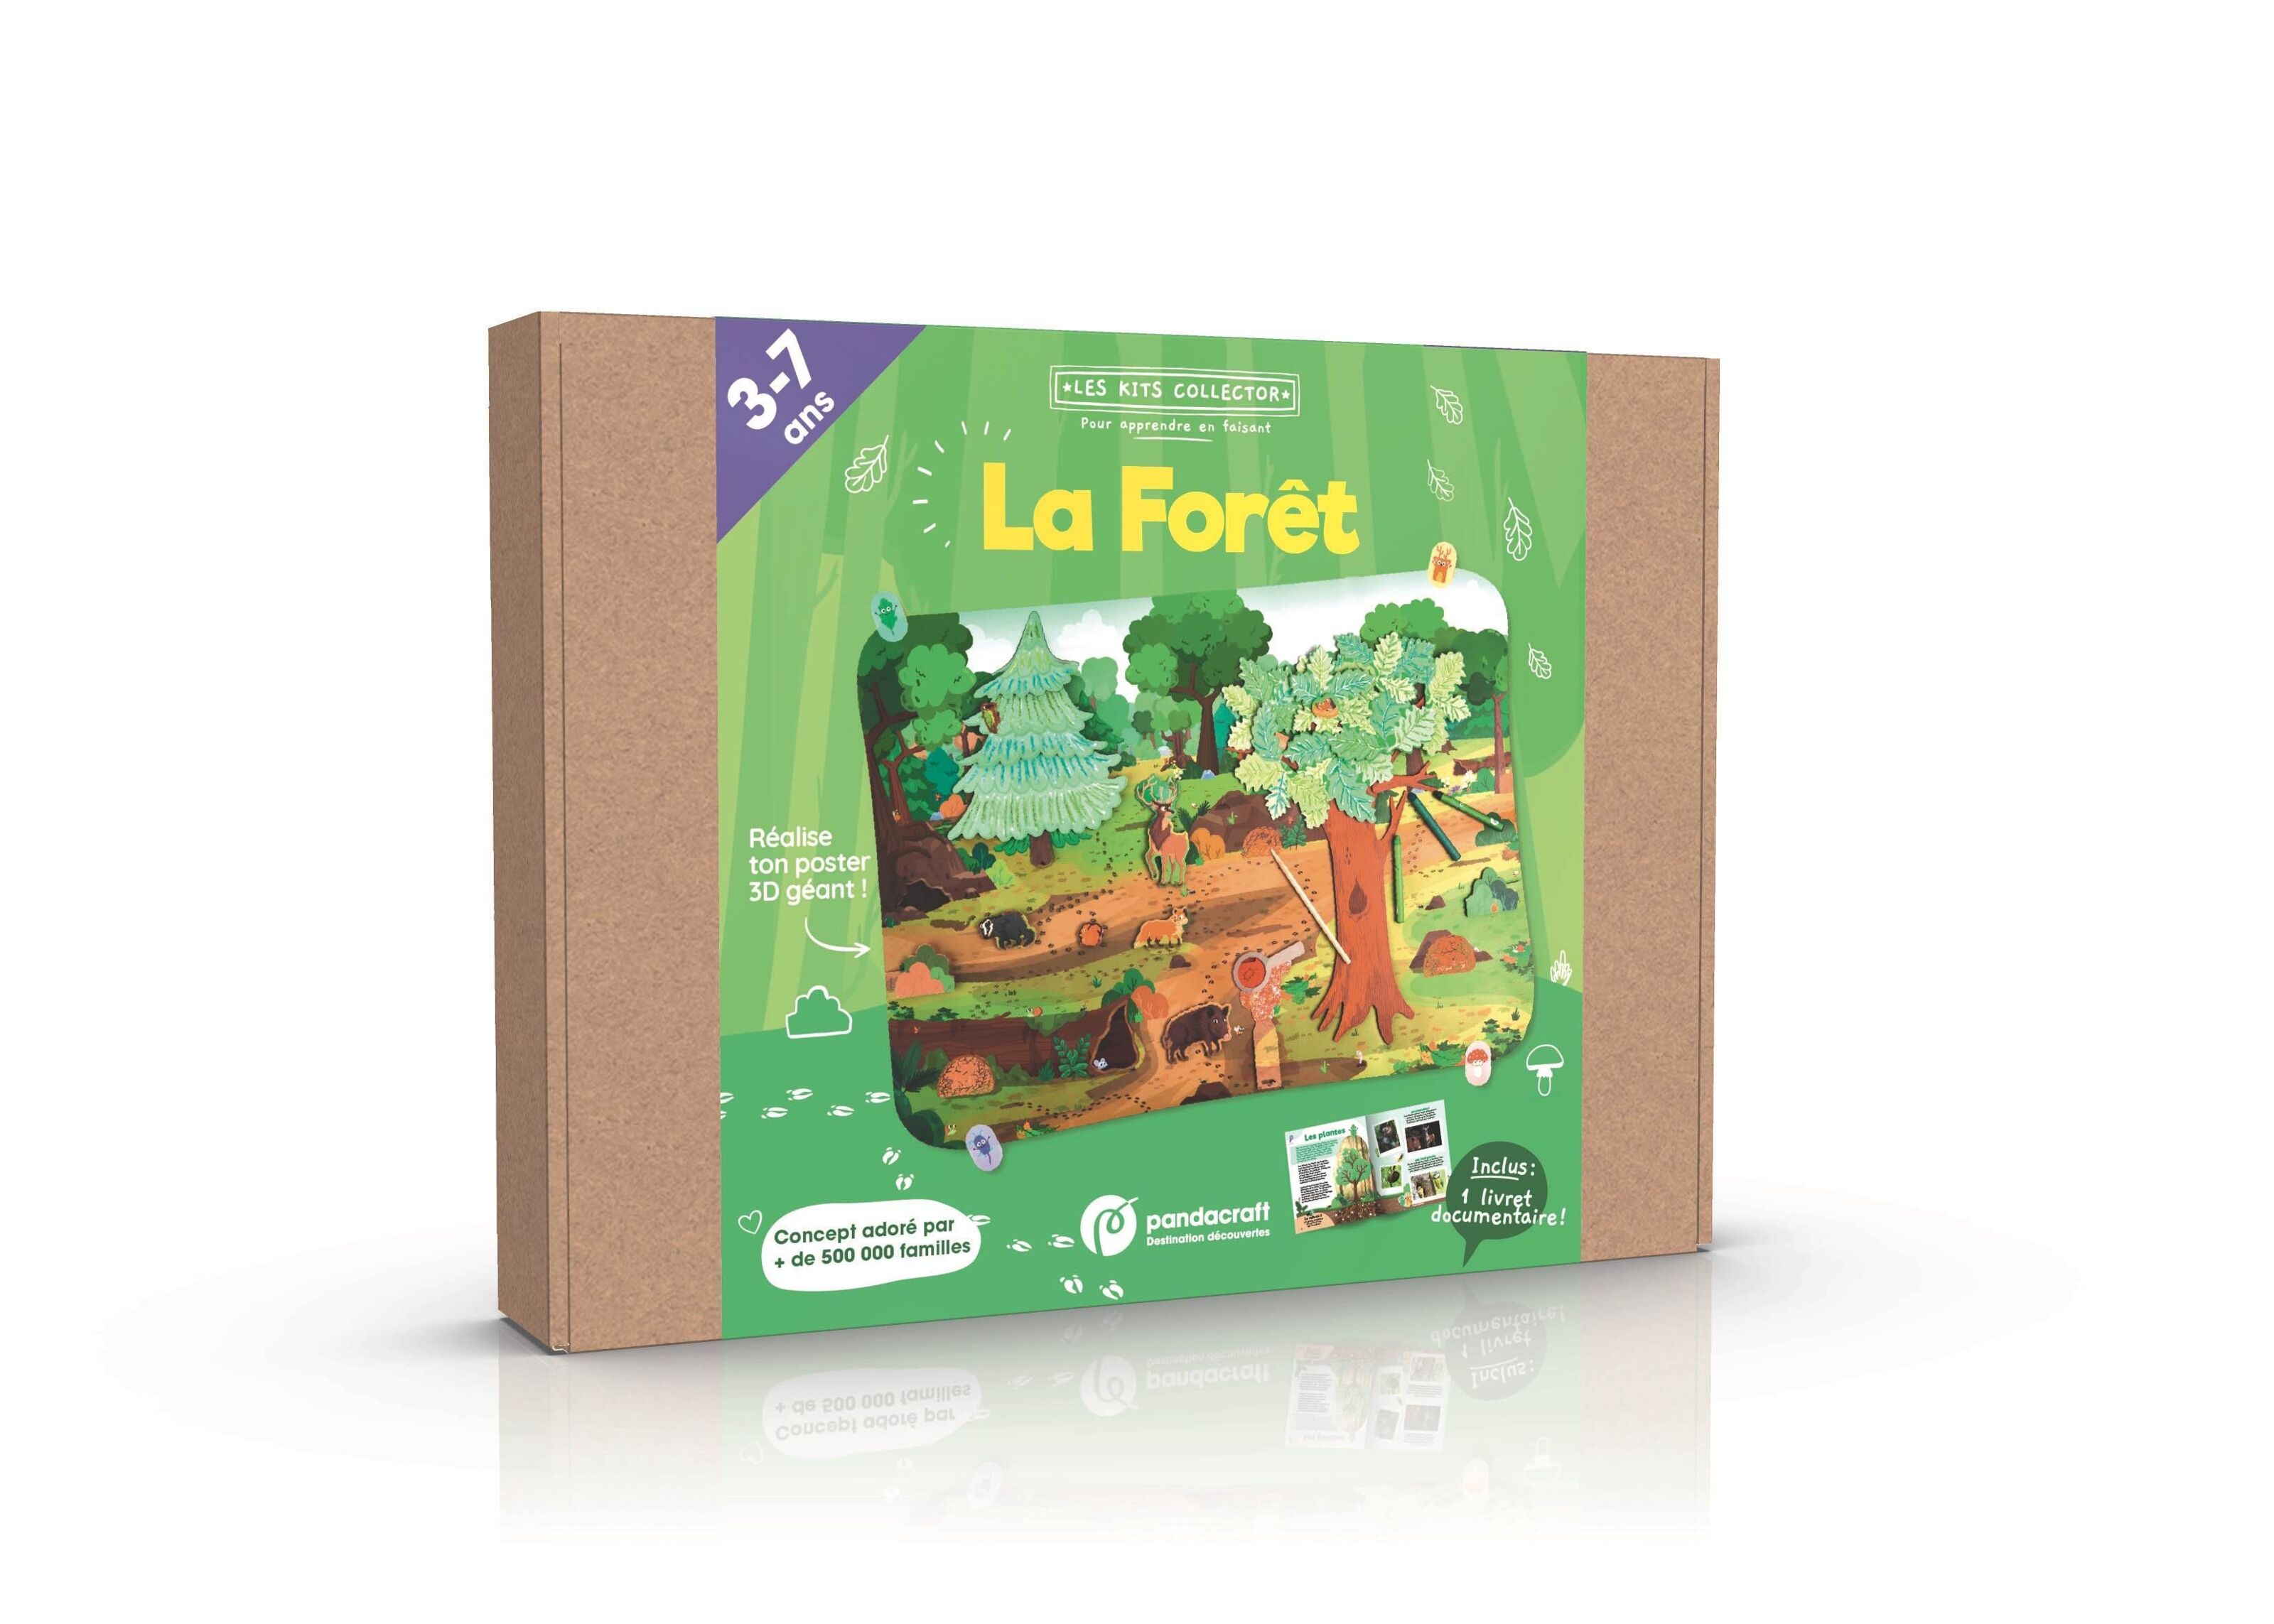 La forêt : kit ludo-éducatif : 3-7 ans - Collectif - Pandacraft